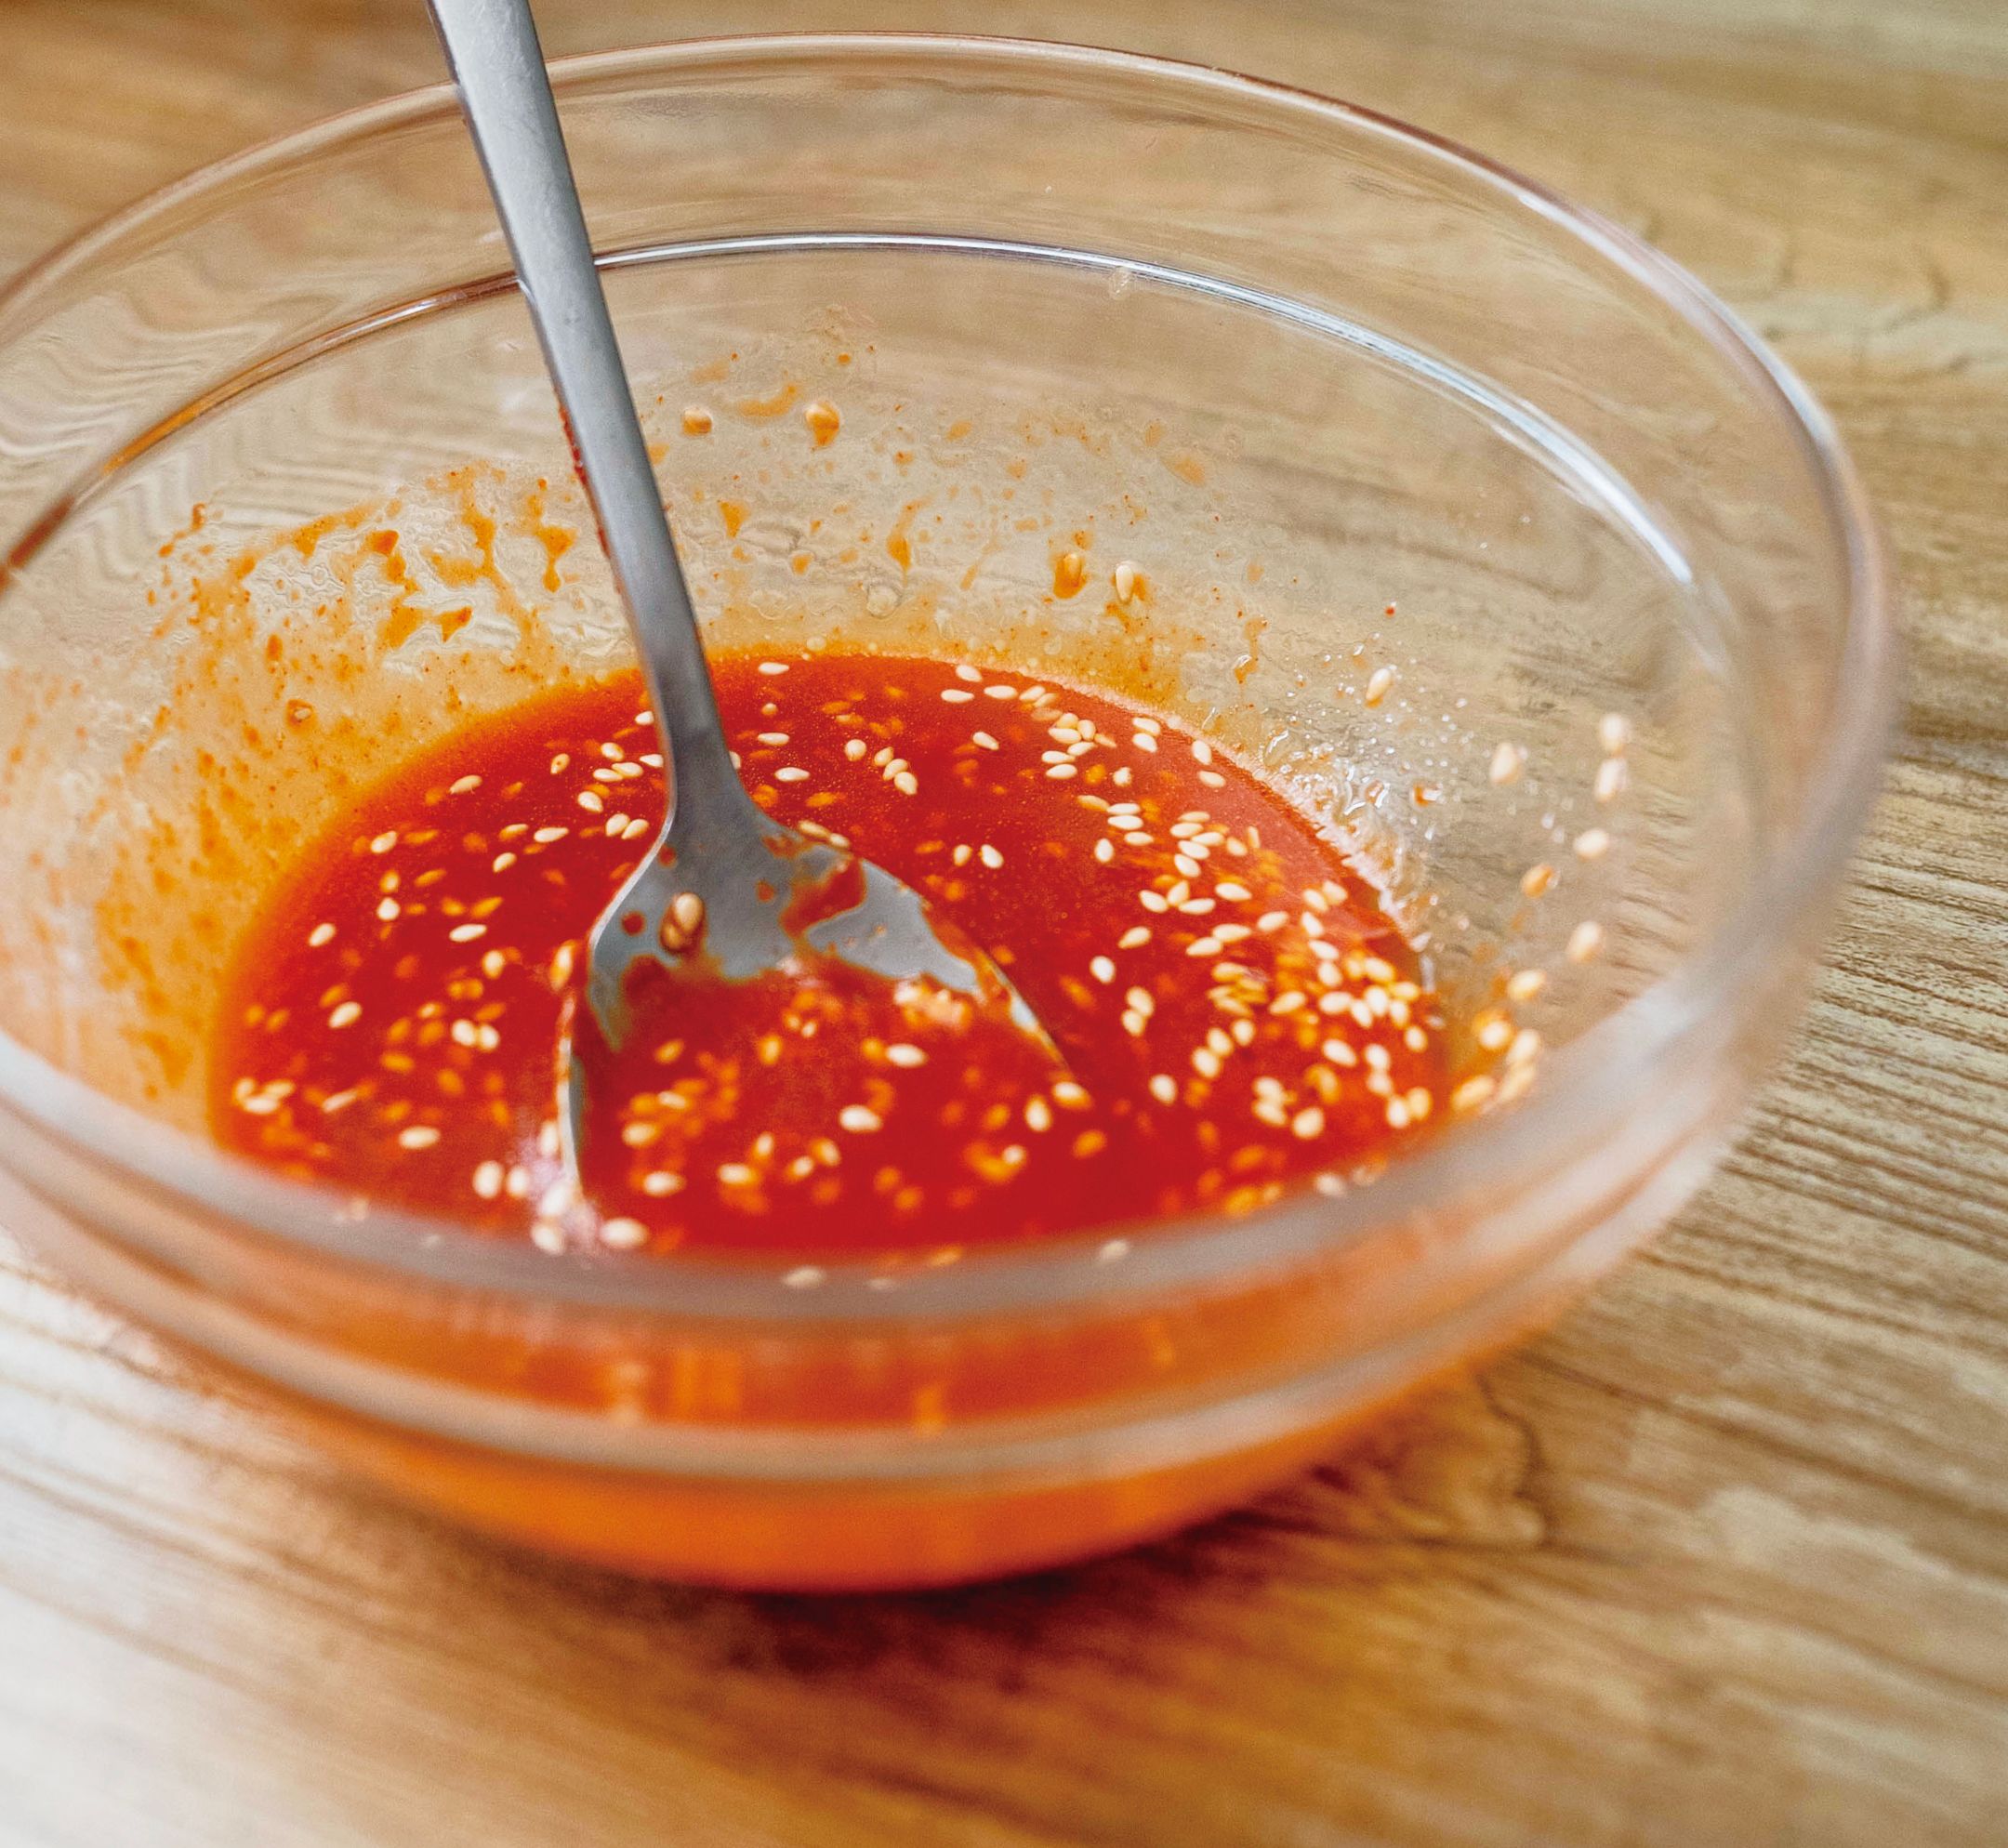 把所有醬料放入碗中攪拌均勻。